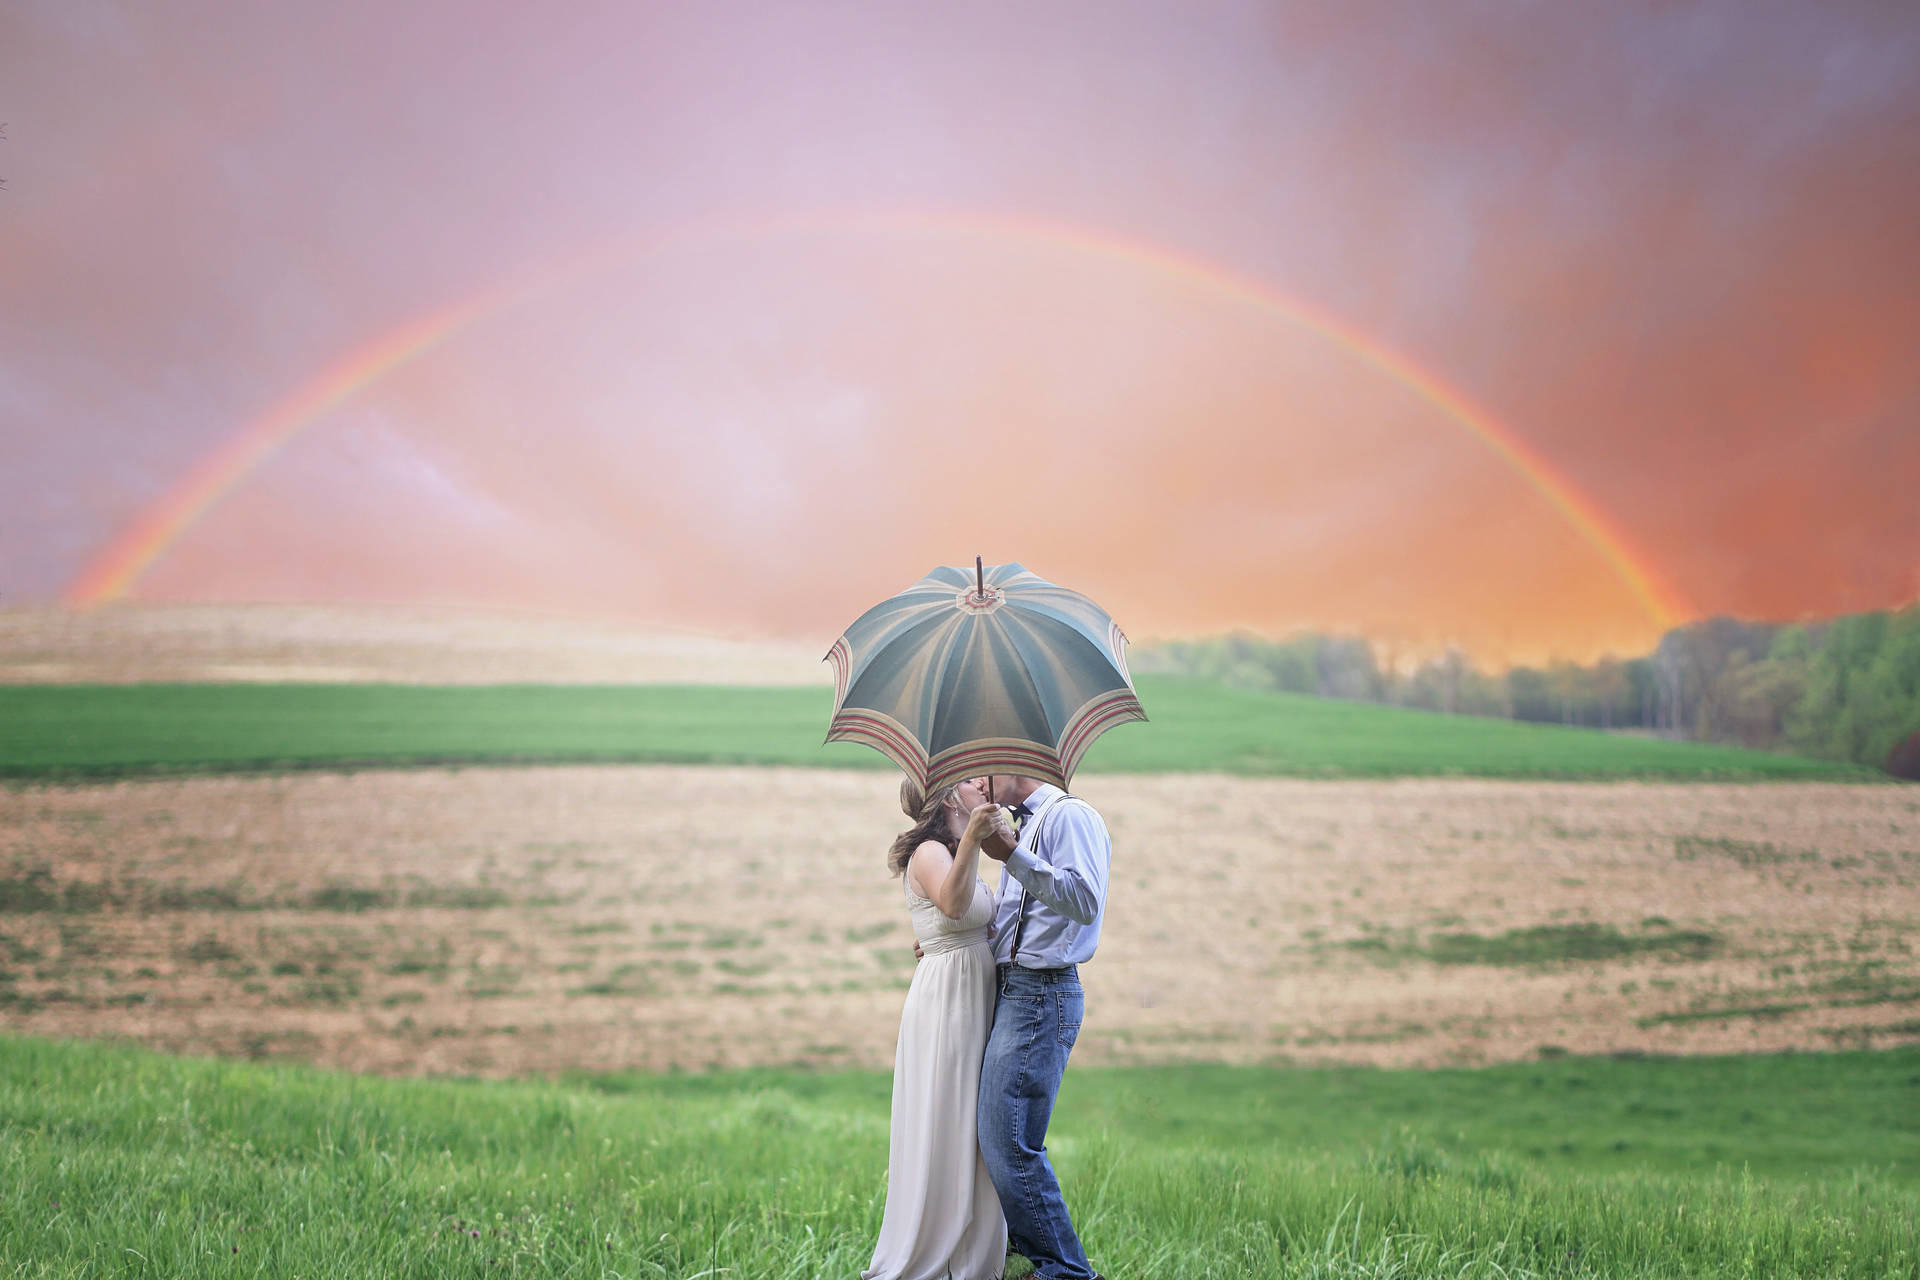 Romantisktpar Kysser Bakom Paraply Under Regnbågen. Wallpaper